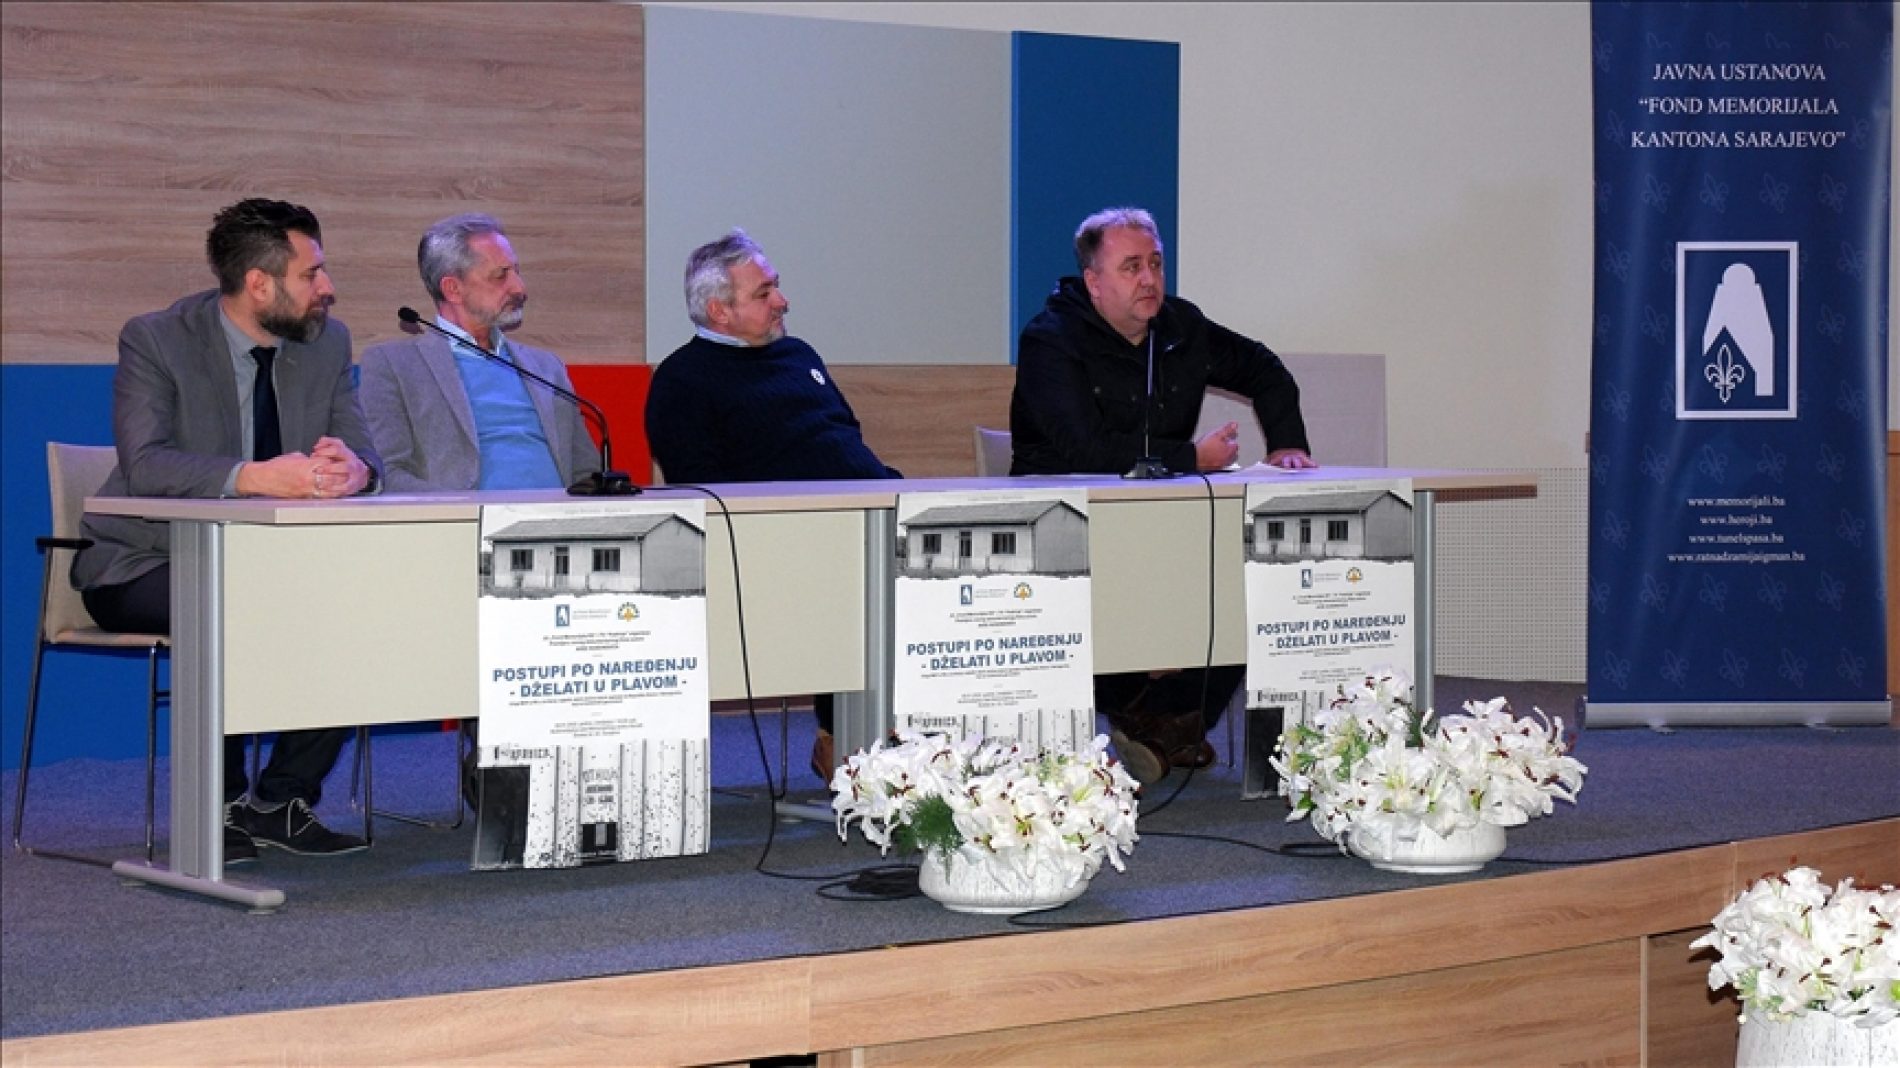 Avdo Huseinović za 9. januar najavio premijeru dokumentarca “Postupi po naređenju – dželati u plavom“